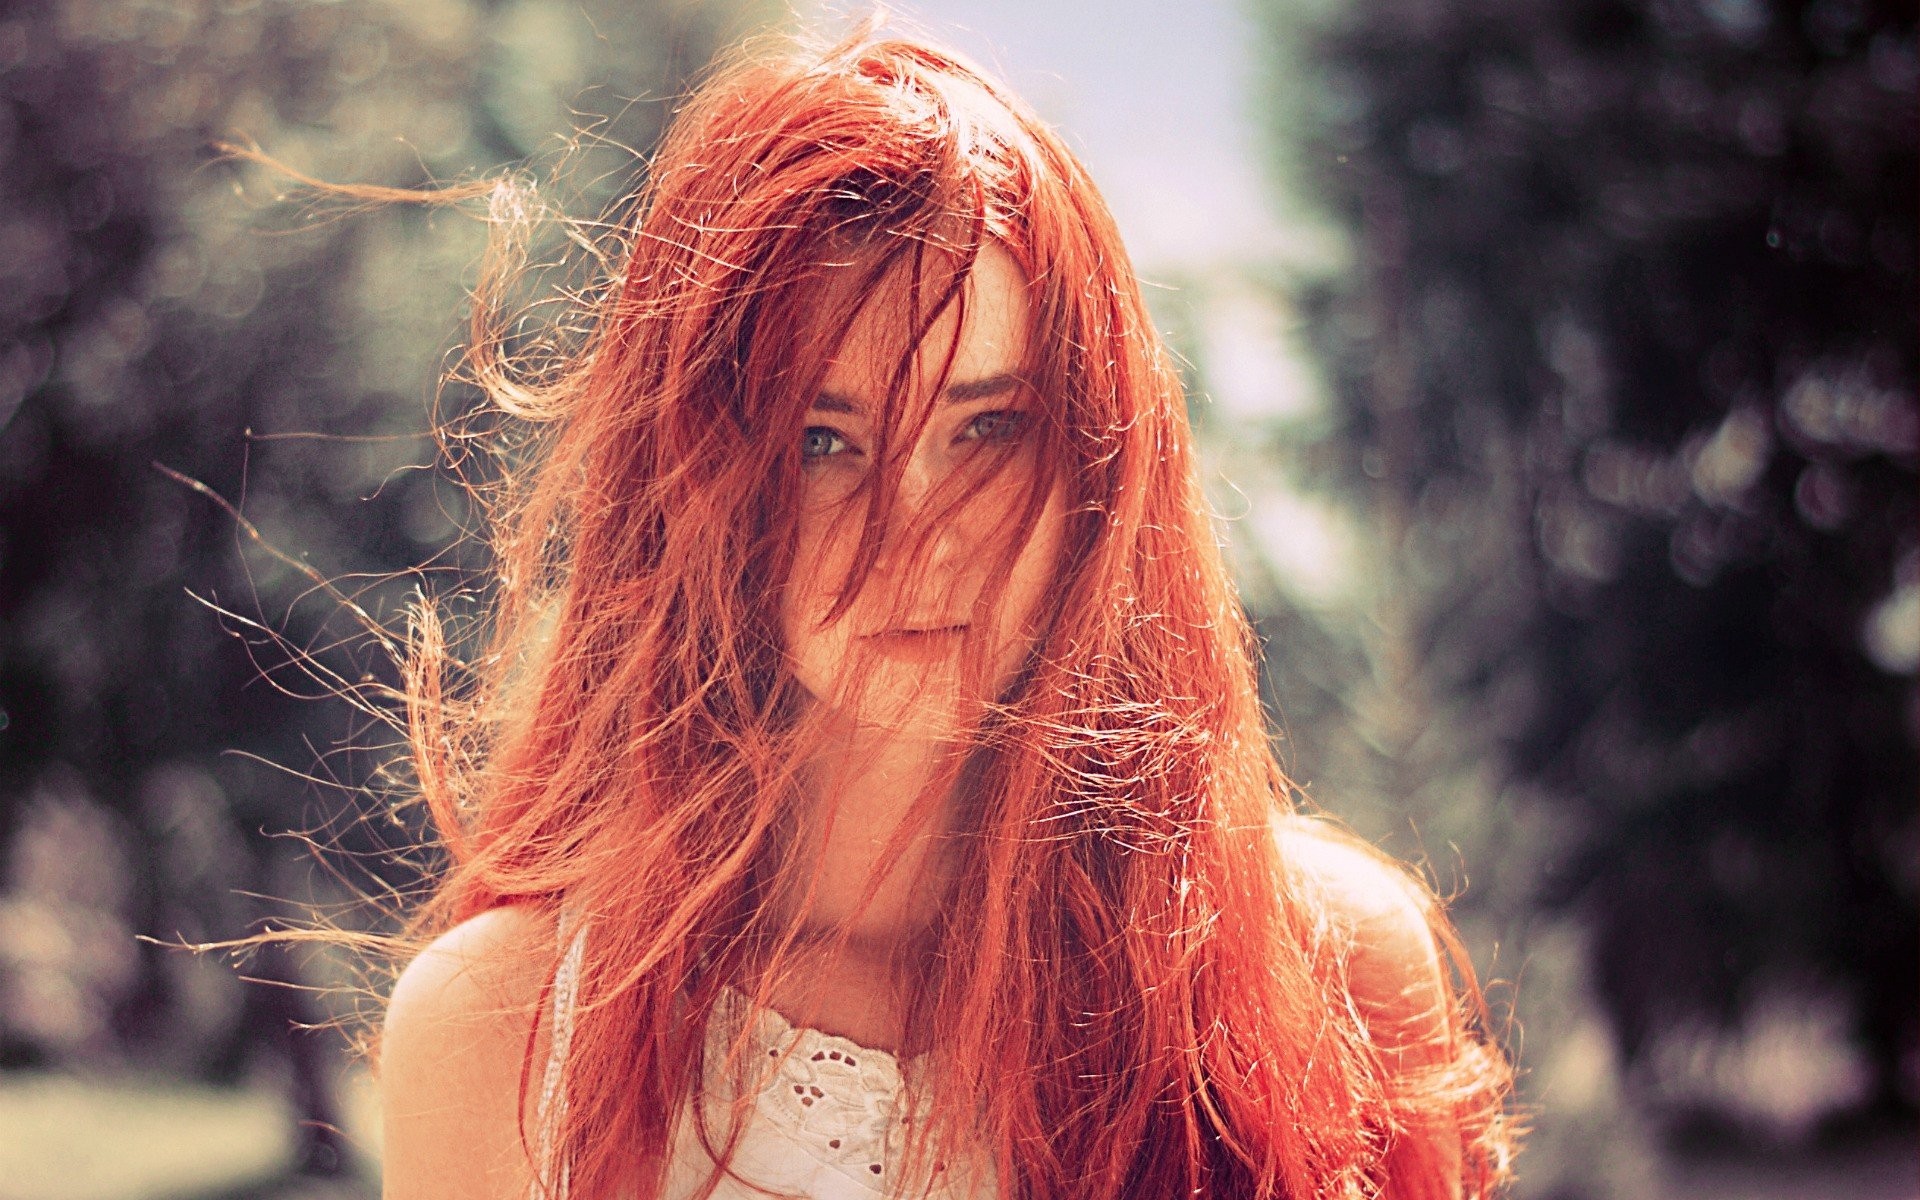 Redhead Model Green Eyes Women Women Outdoors Hair In Face